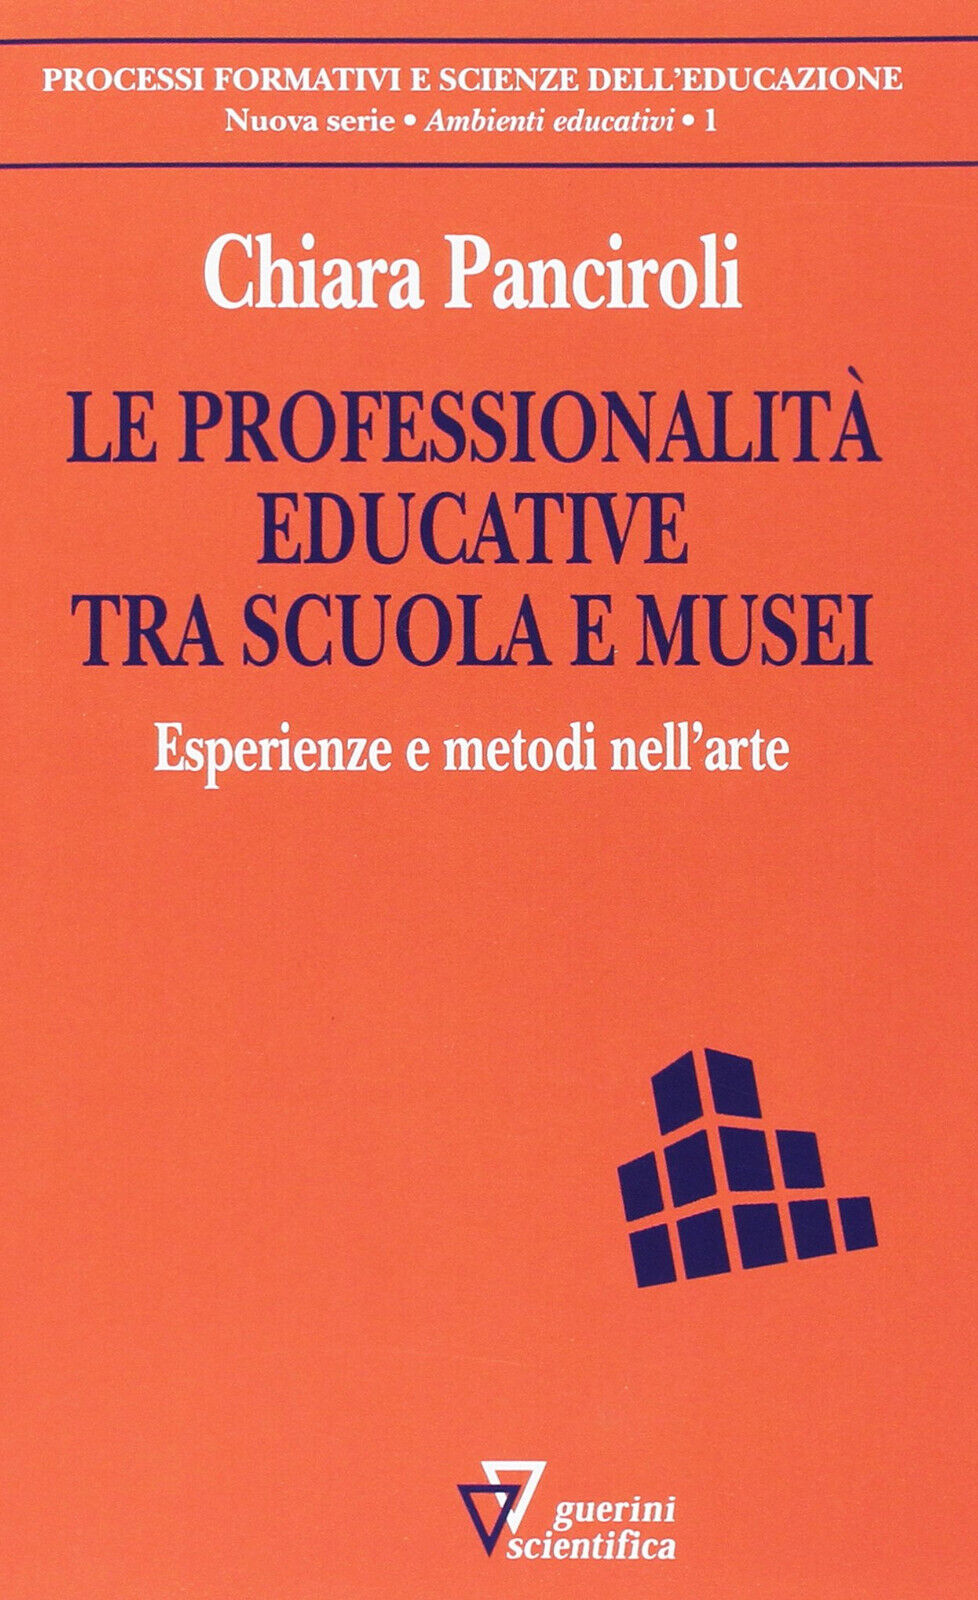 Le professionalit? educative tra scuola e musei - Chiara Panciroli-Guerini, 2016